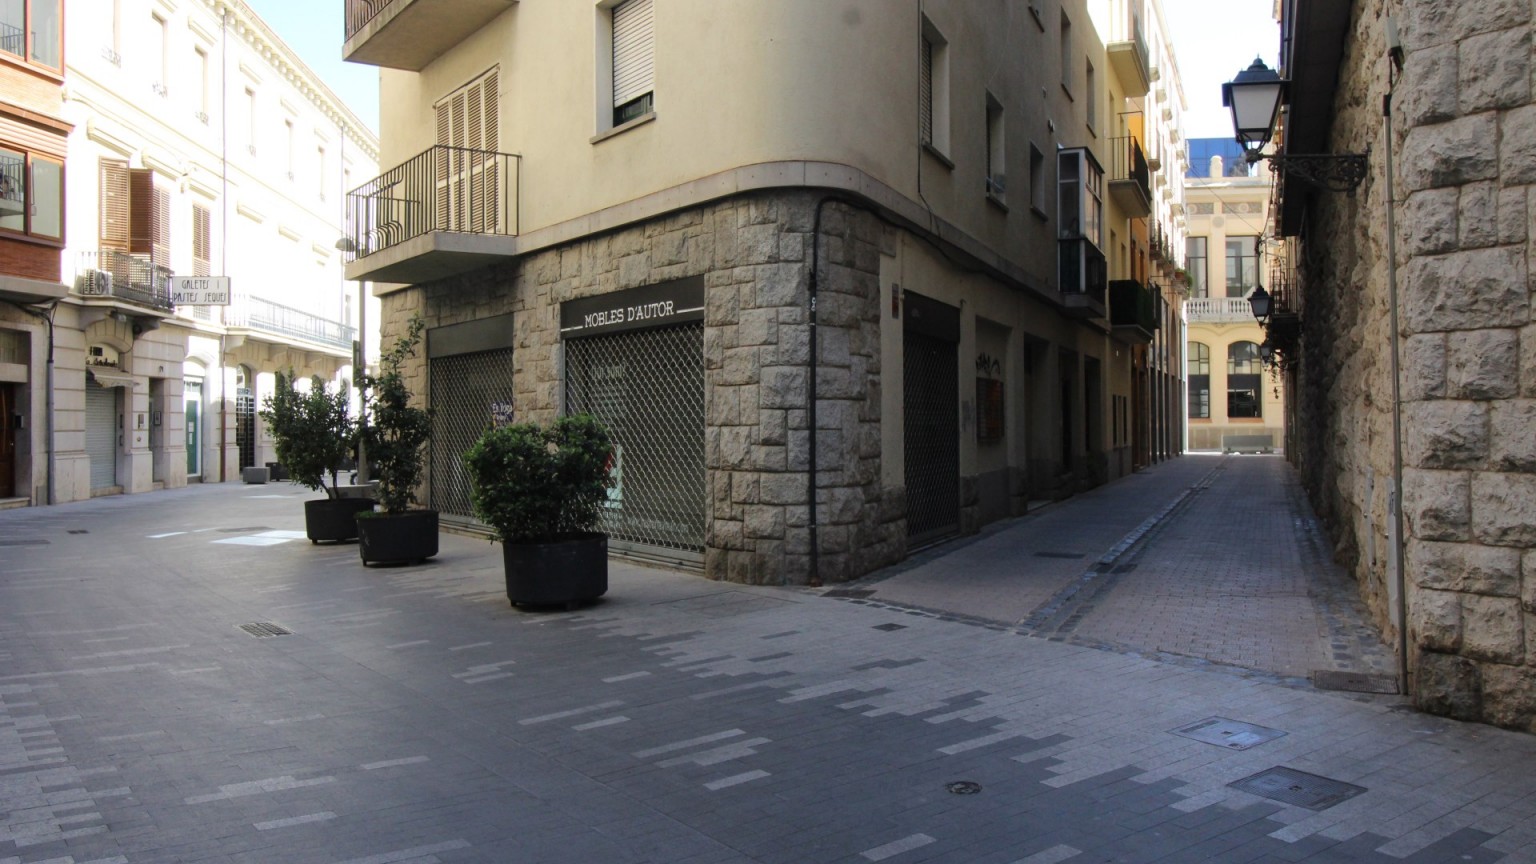 Local de lloguer, en el centre de Figueres.